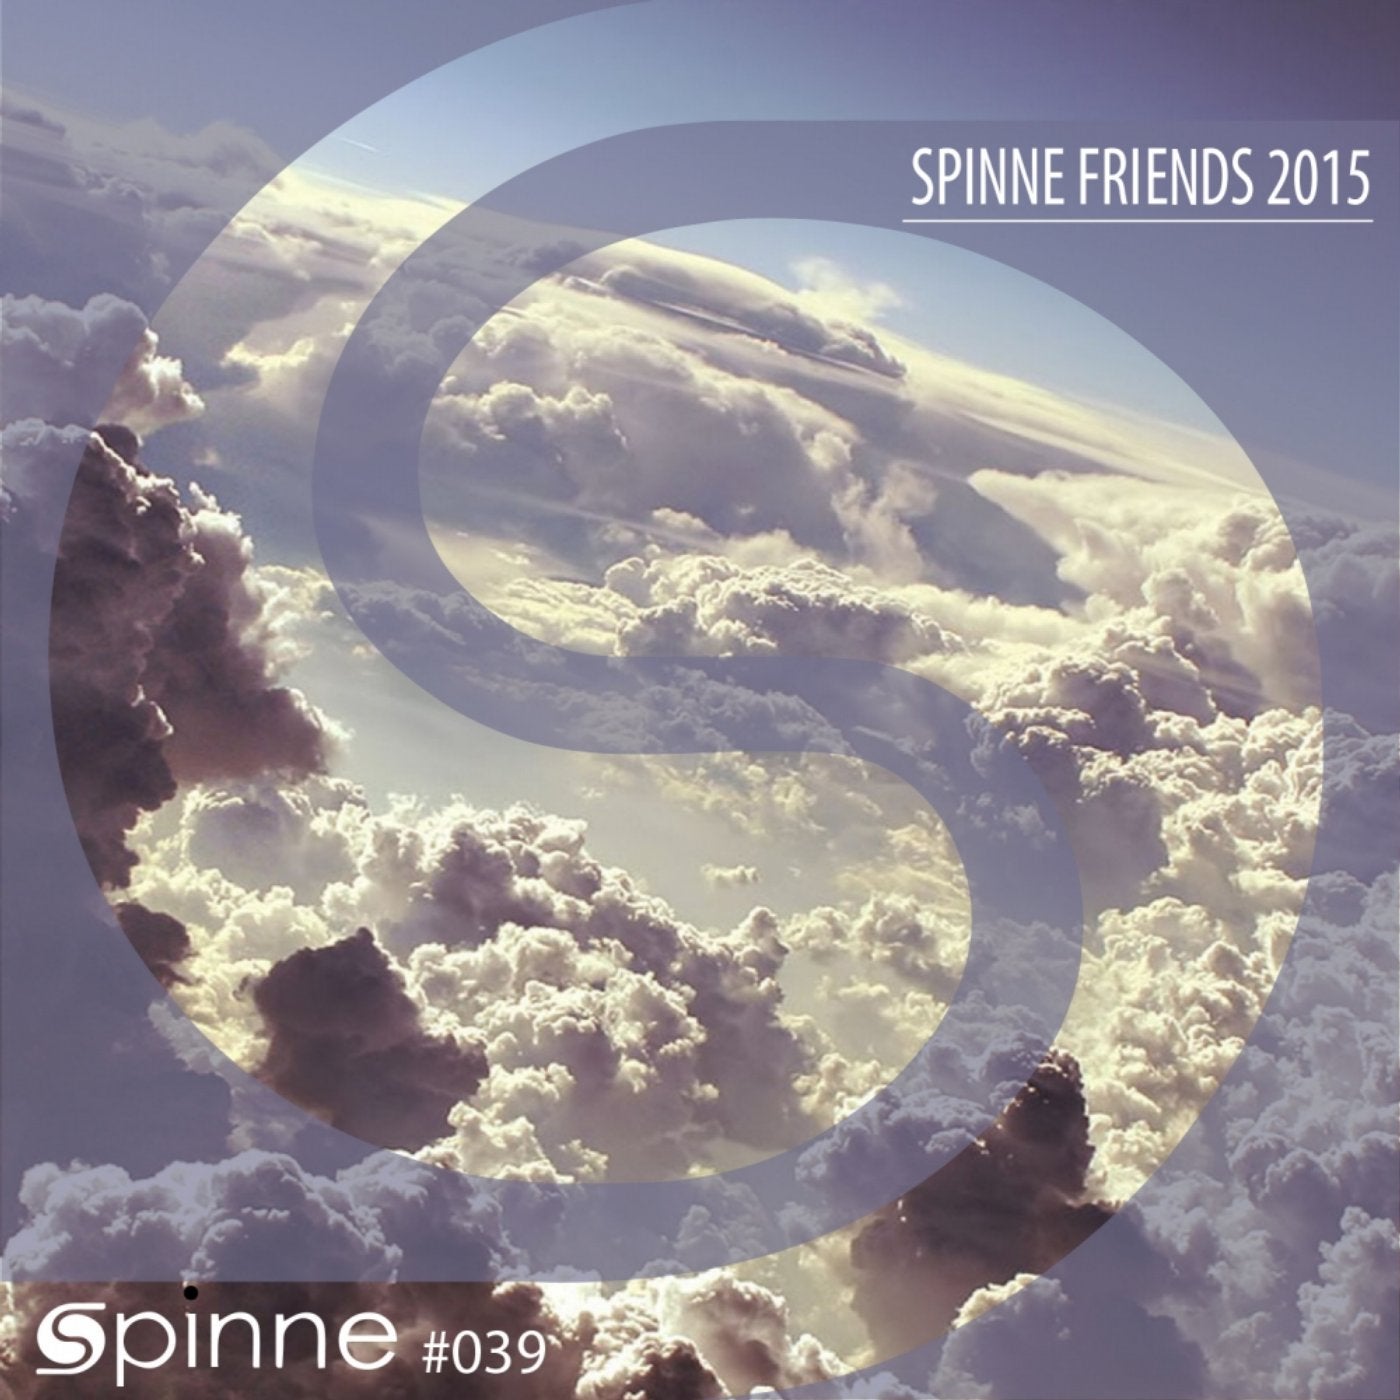 Spinne Friends 2015